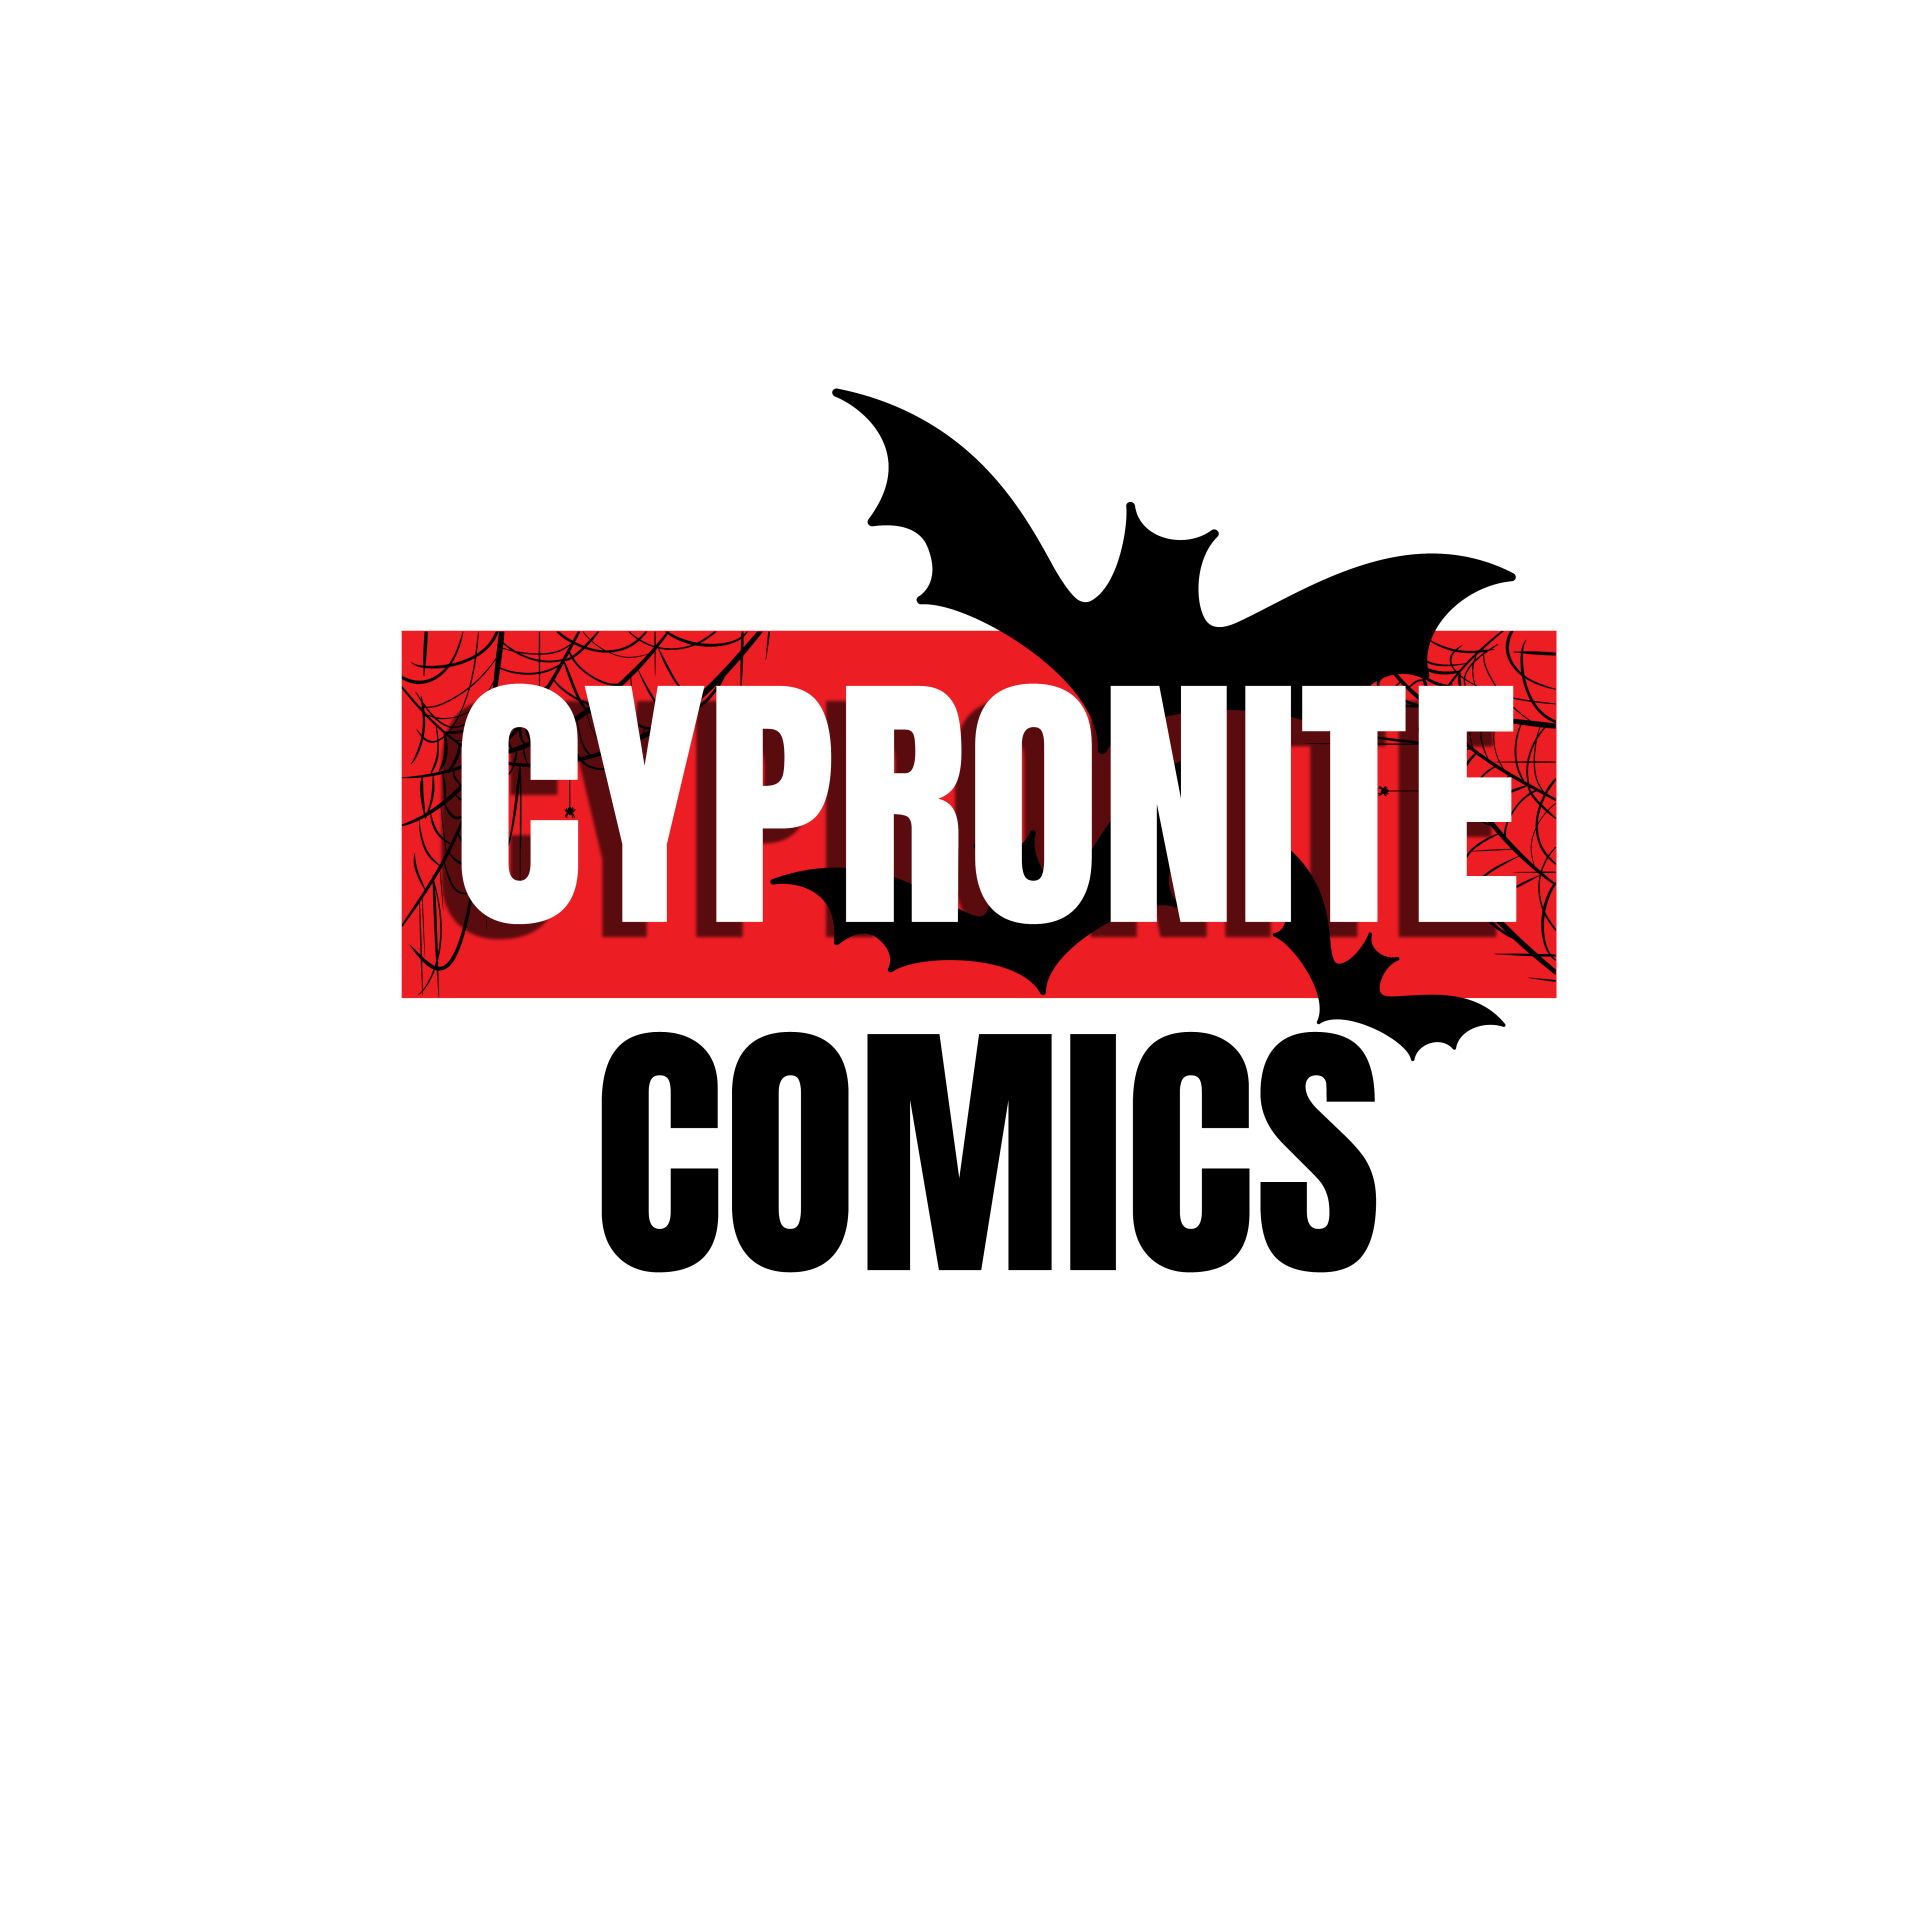 Cypronite Comics